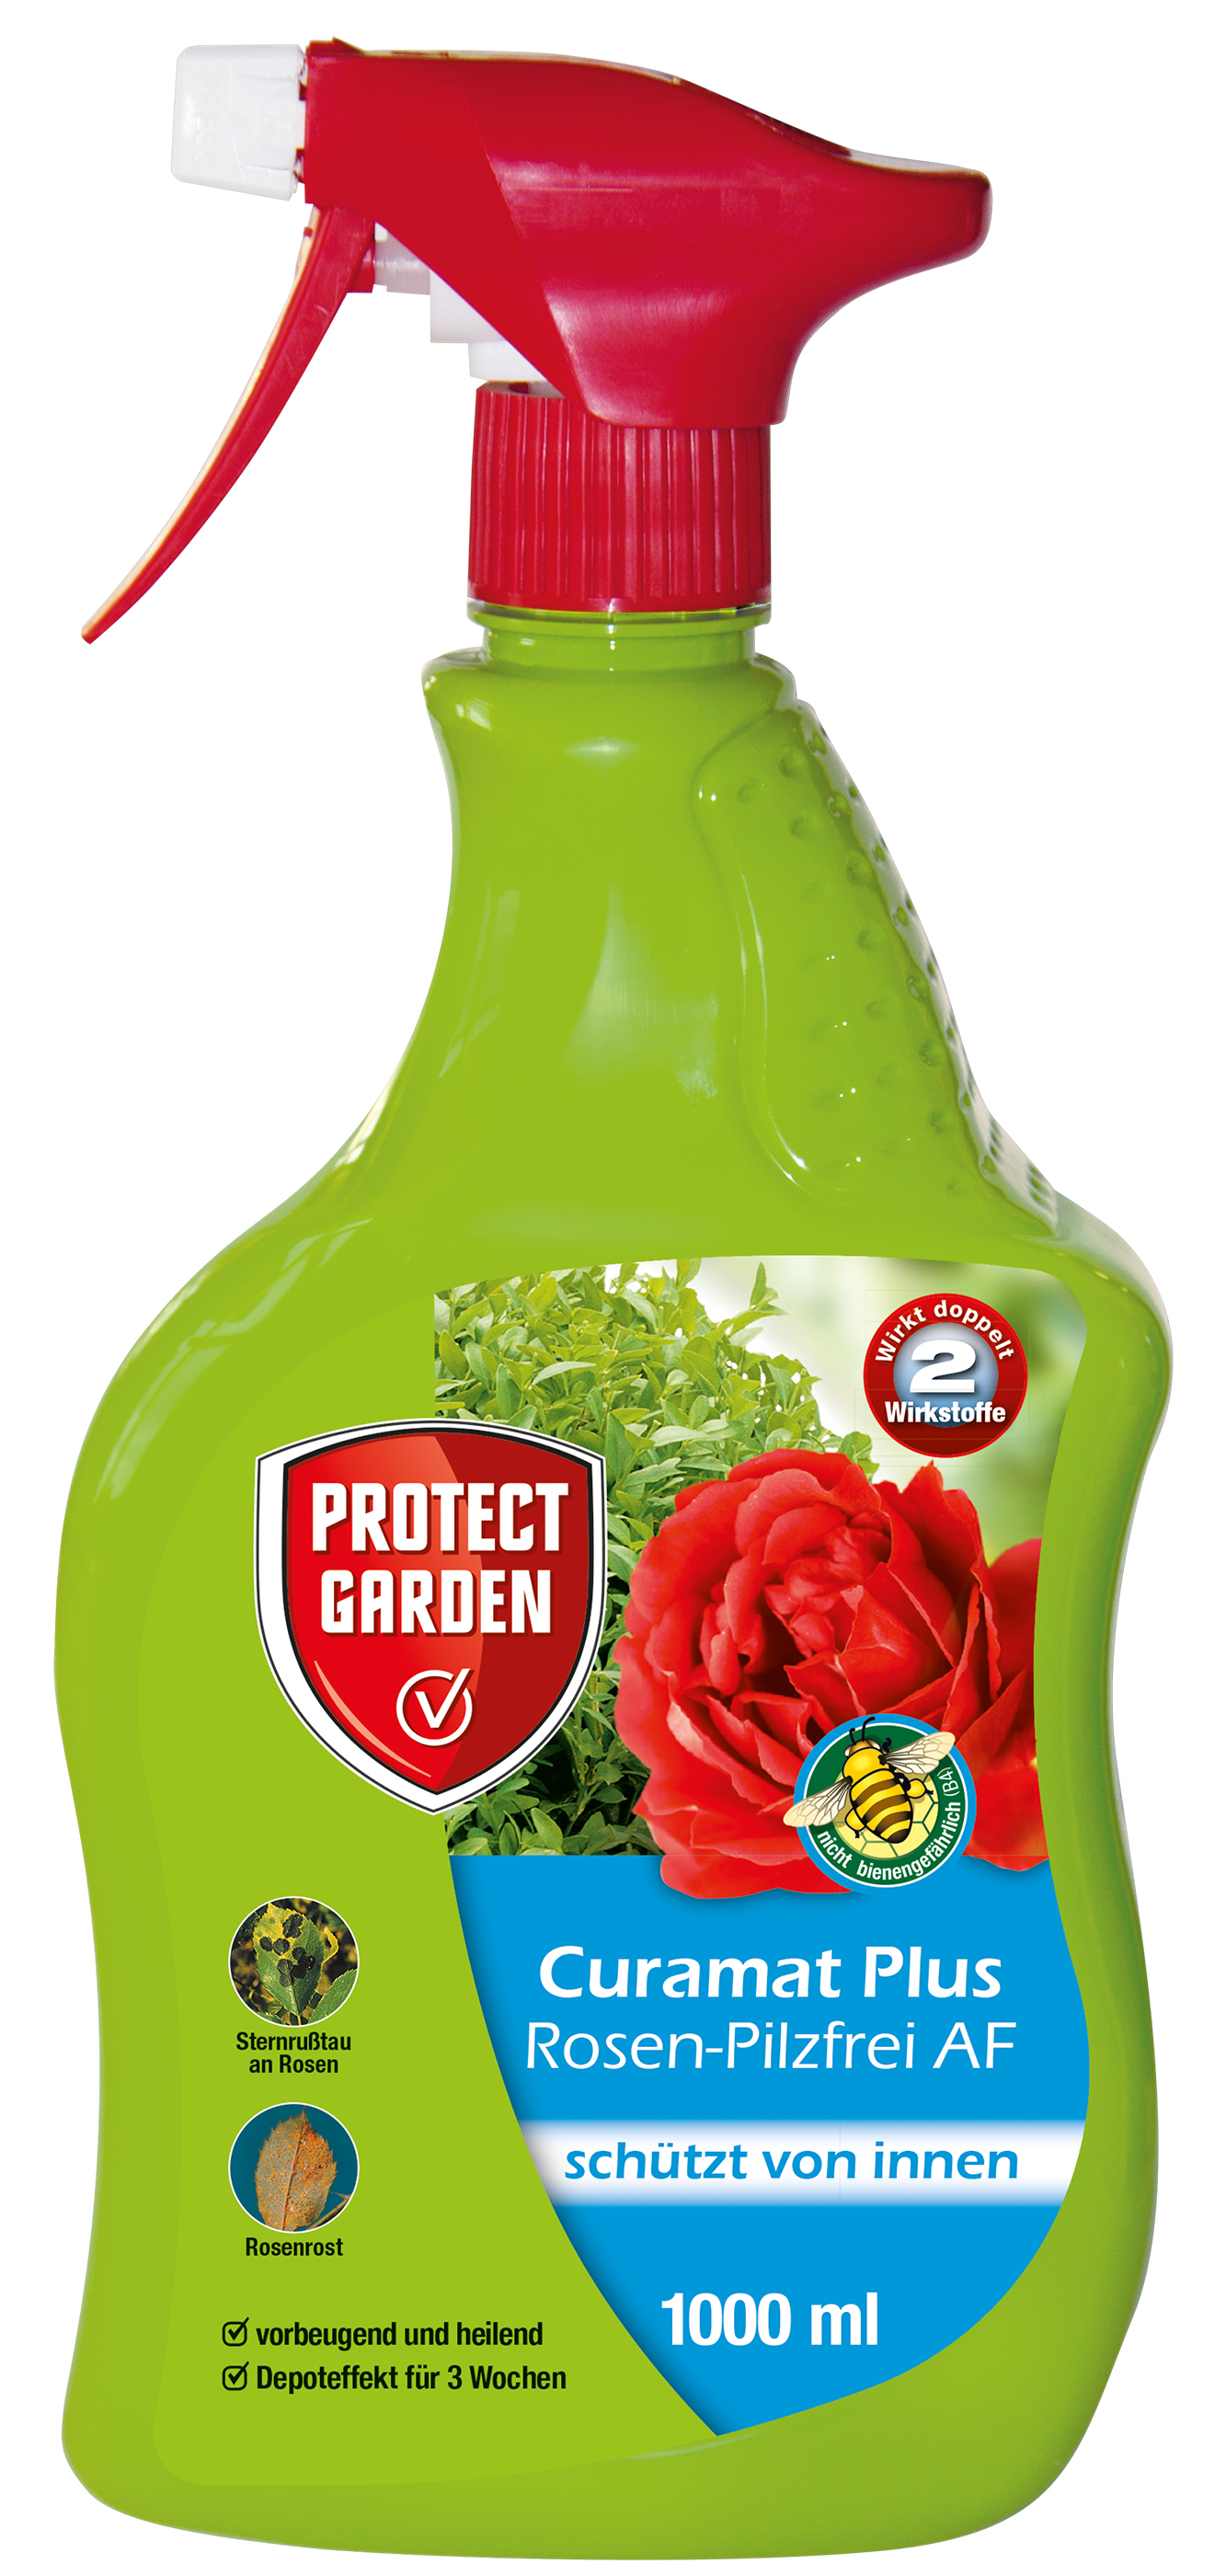 Protect Garden Curamat Plus Rosen-Pilzfrei AF, 1000 ml